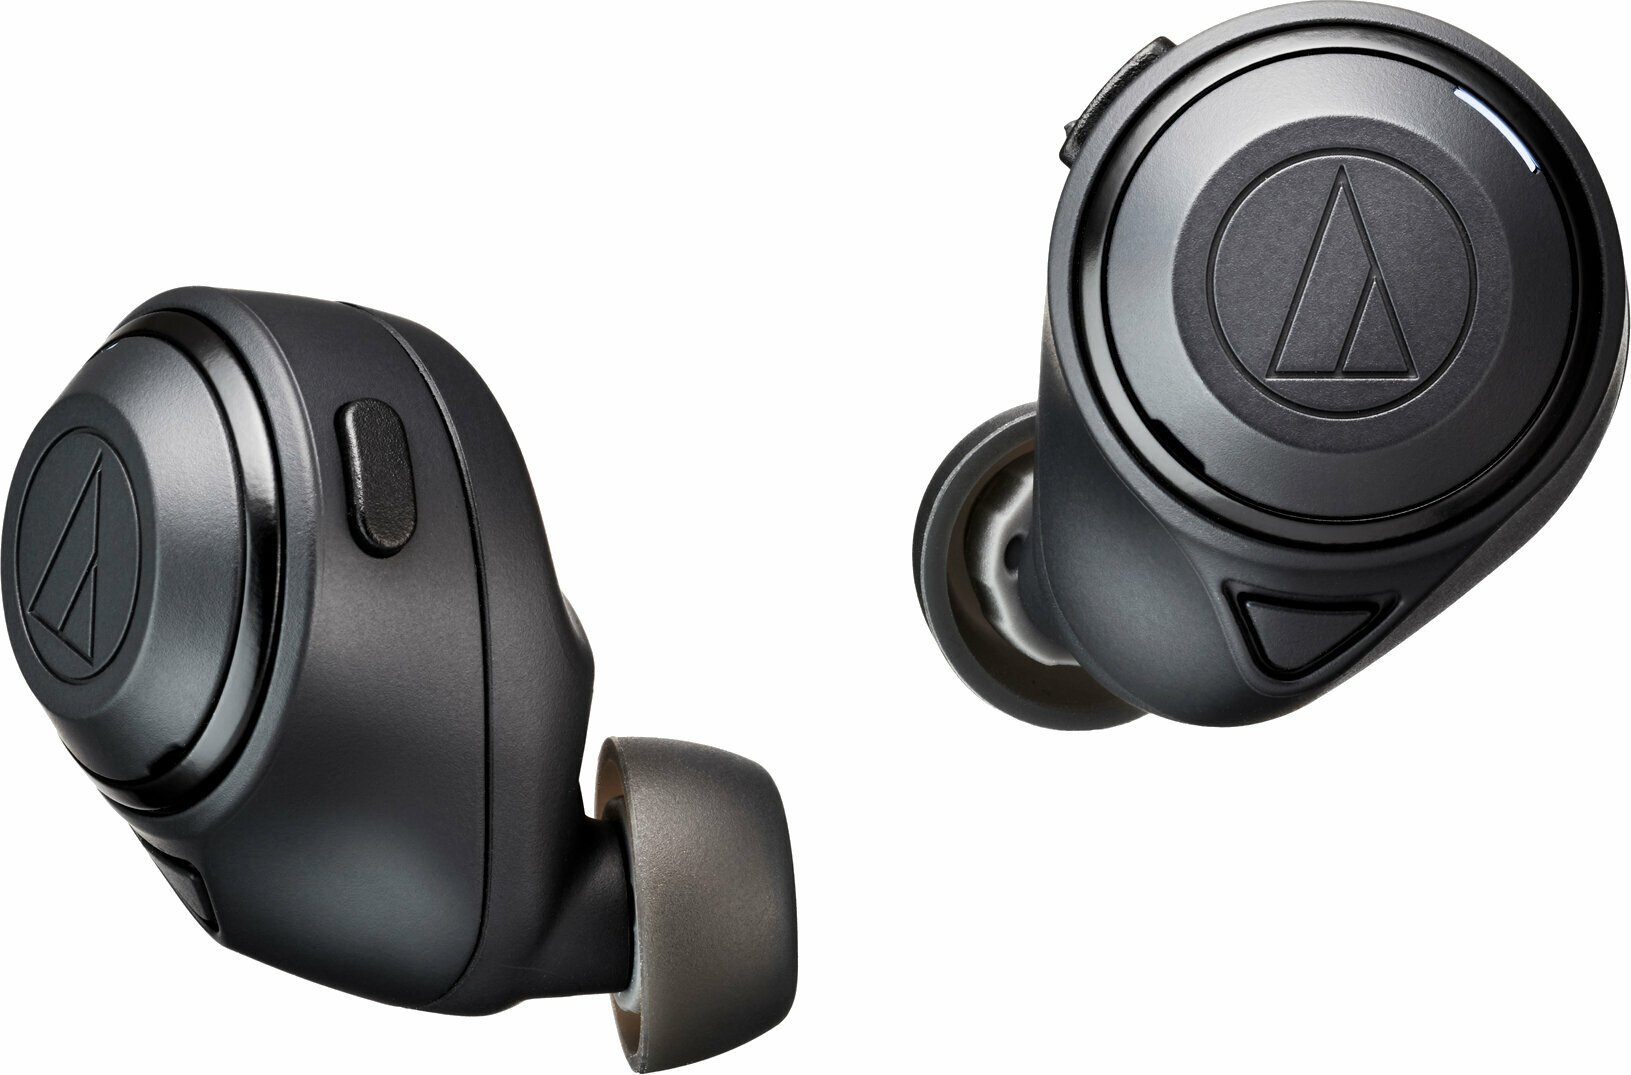 True Wireless In-ear Audio-Technica ATH-CKS50TW Black